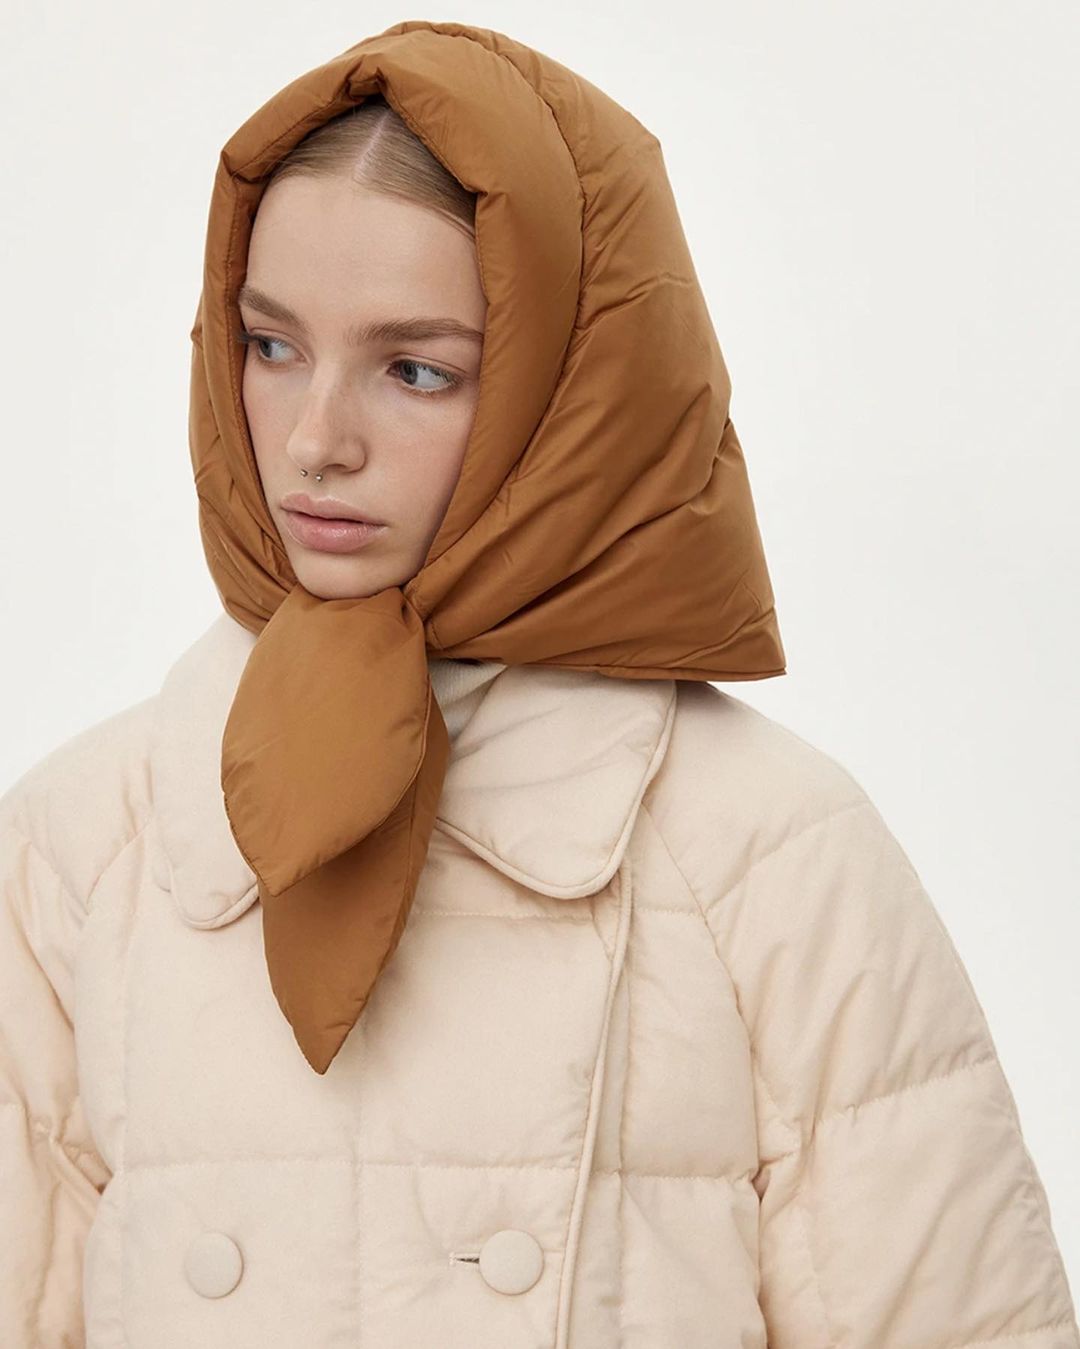 модный головной убор зима 2021 2022 теплое на голову платок косынка дутая коричневая бежевая